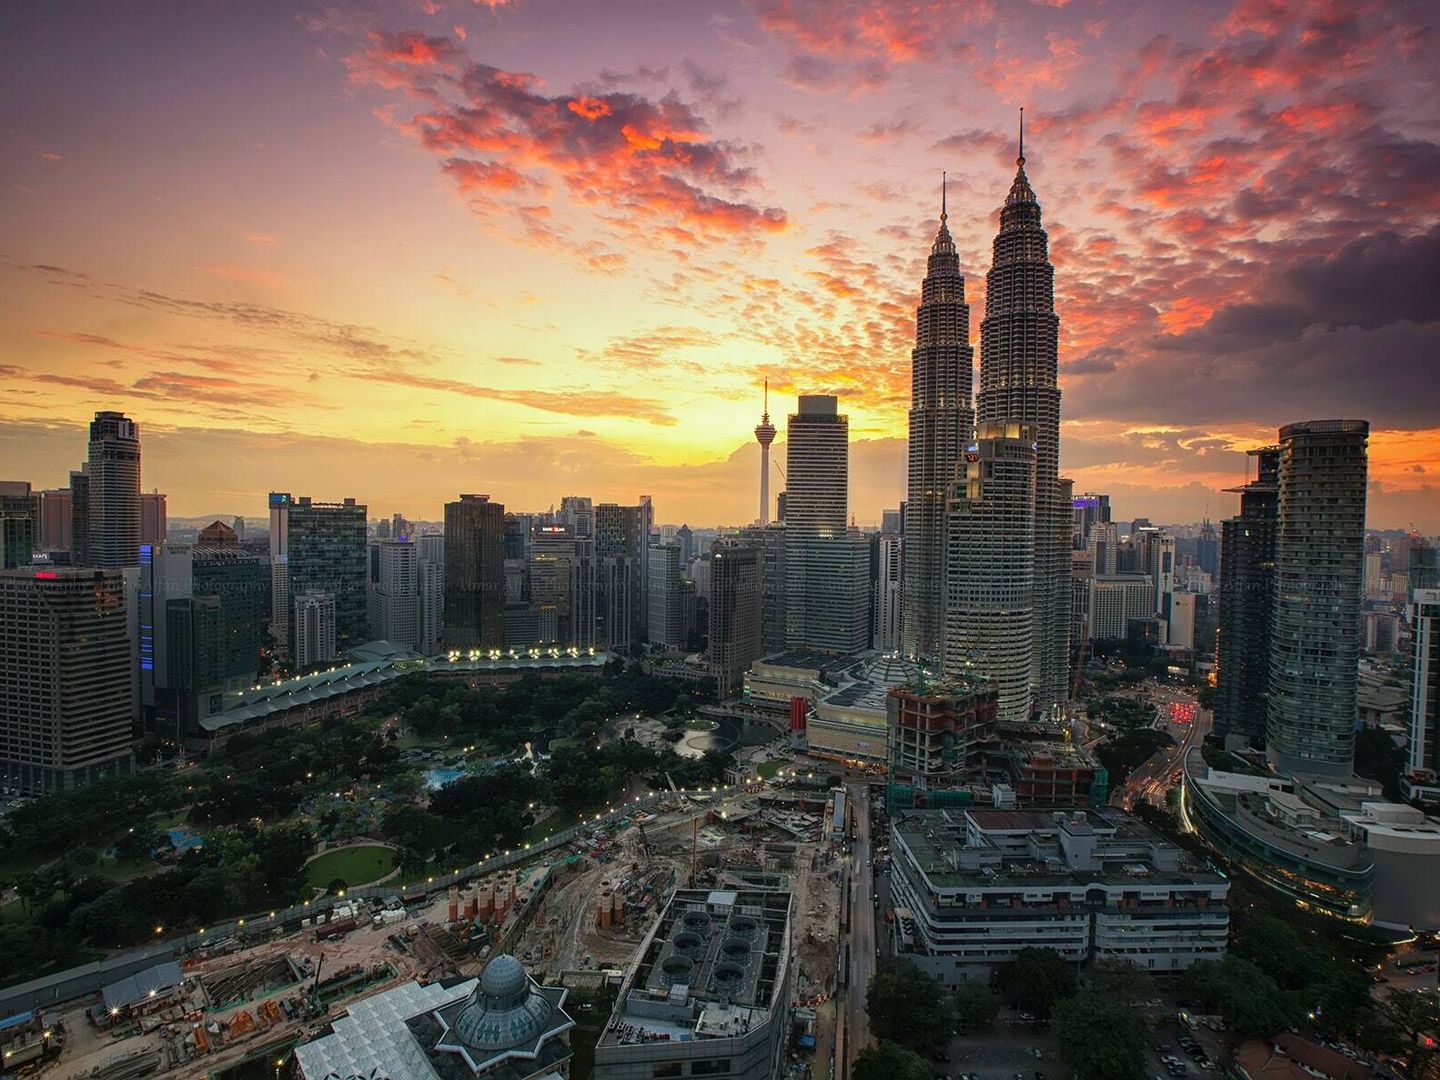 Malasia, uno de los destinos a visitar en 2022 (Pexels/Zukiman)